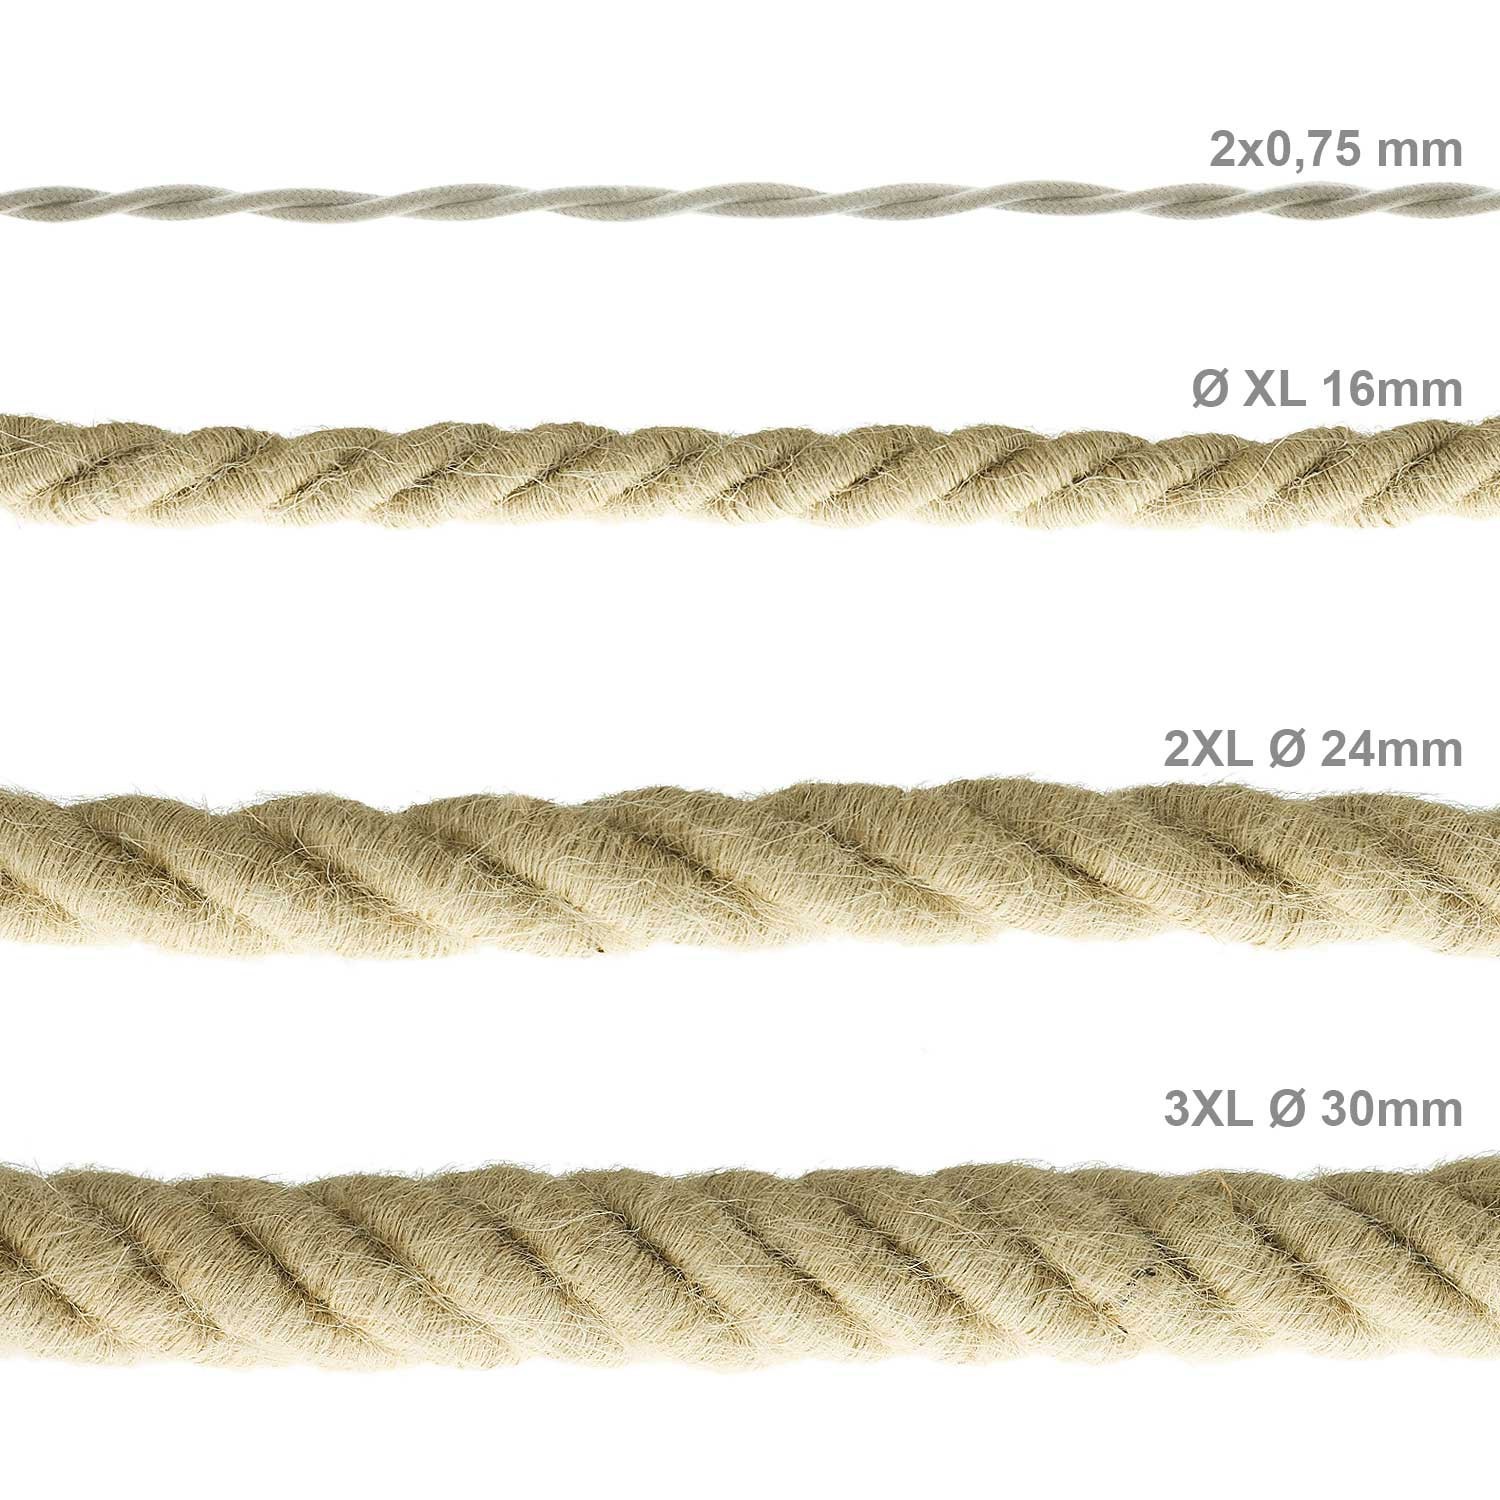 Cordón XL, cable eléctrico 3x0,75, recubierto en yute en bruto. Diámetro: 16mm.